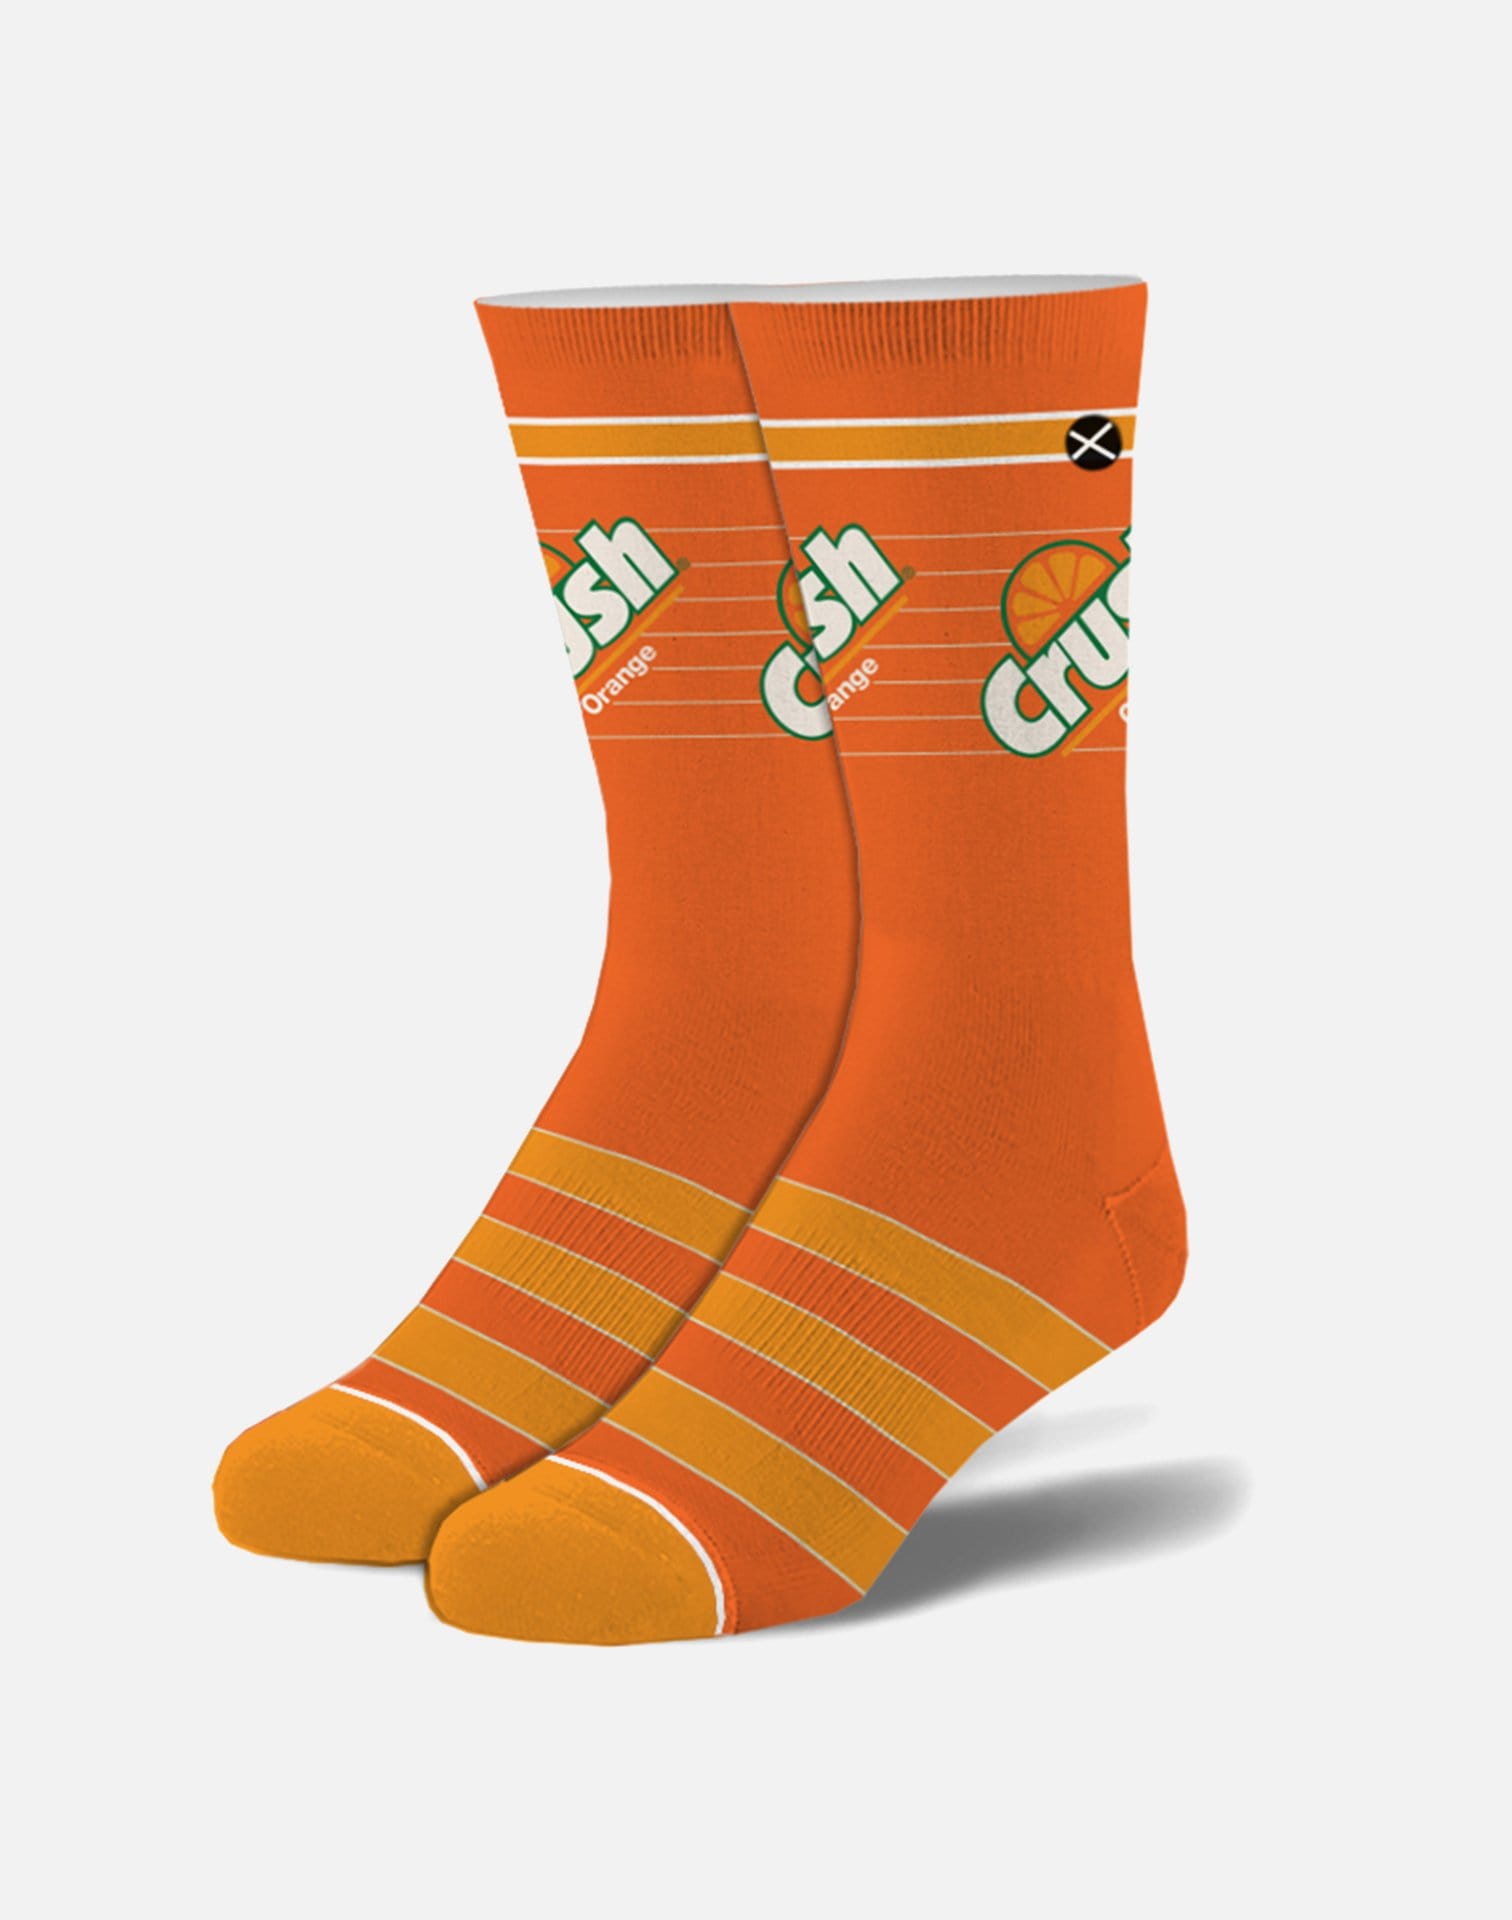 Odd Sox Orange Crush Retro Socks